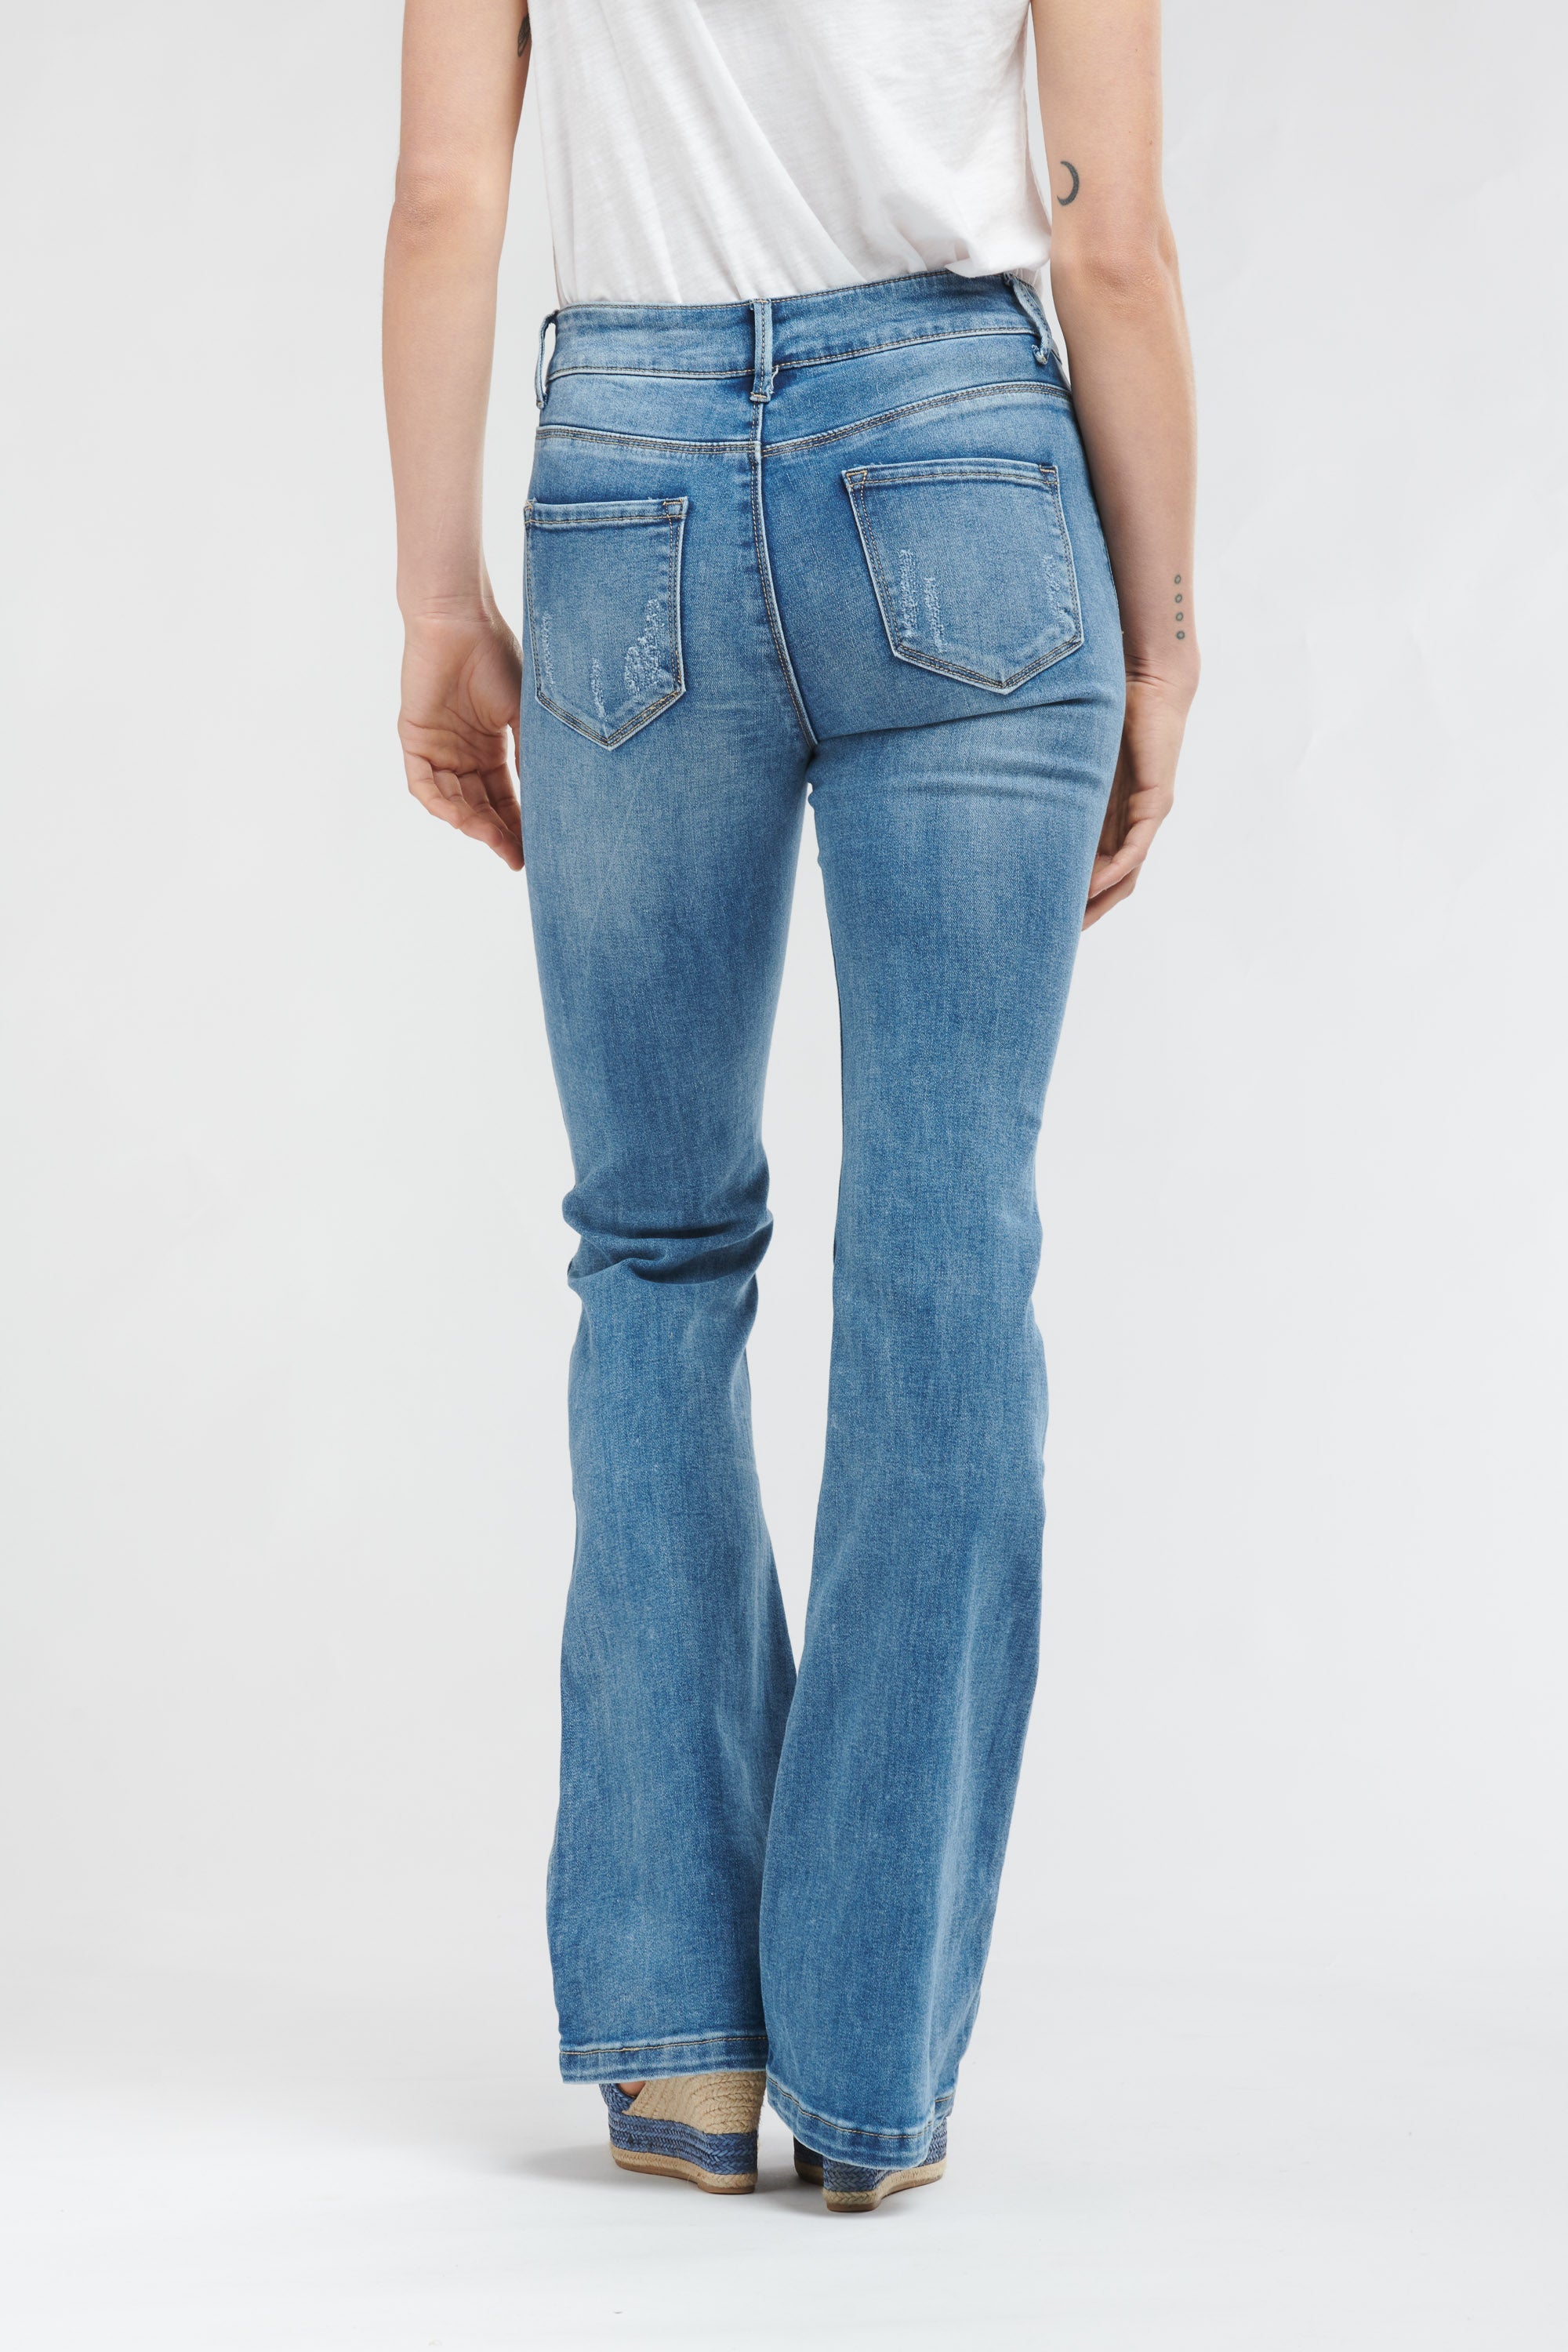 Max Bell Bottom Jeans, High Waist Jeans